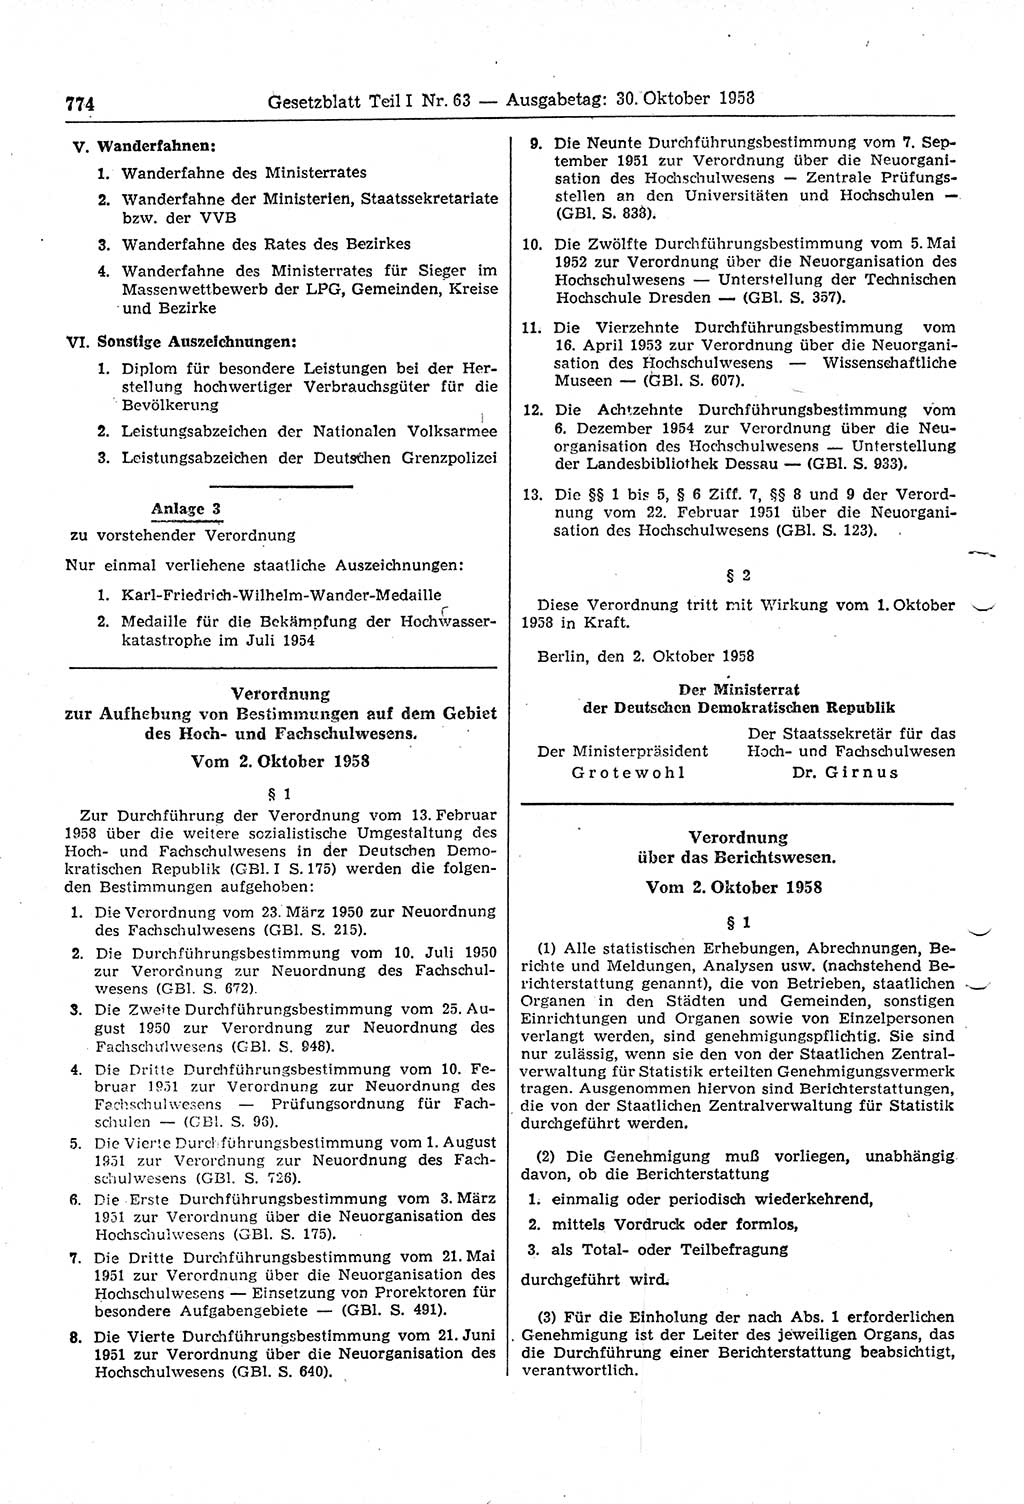 Gesetzblatt (GBl.) der Deutschen Demokratischen Republik (DDR) Teil Ⅰ 1958, Seite 774 (GBl. DDR Ⅰ 1958, S. 774)